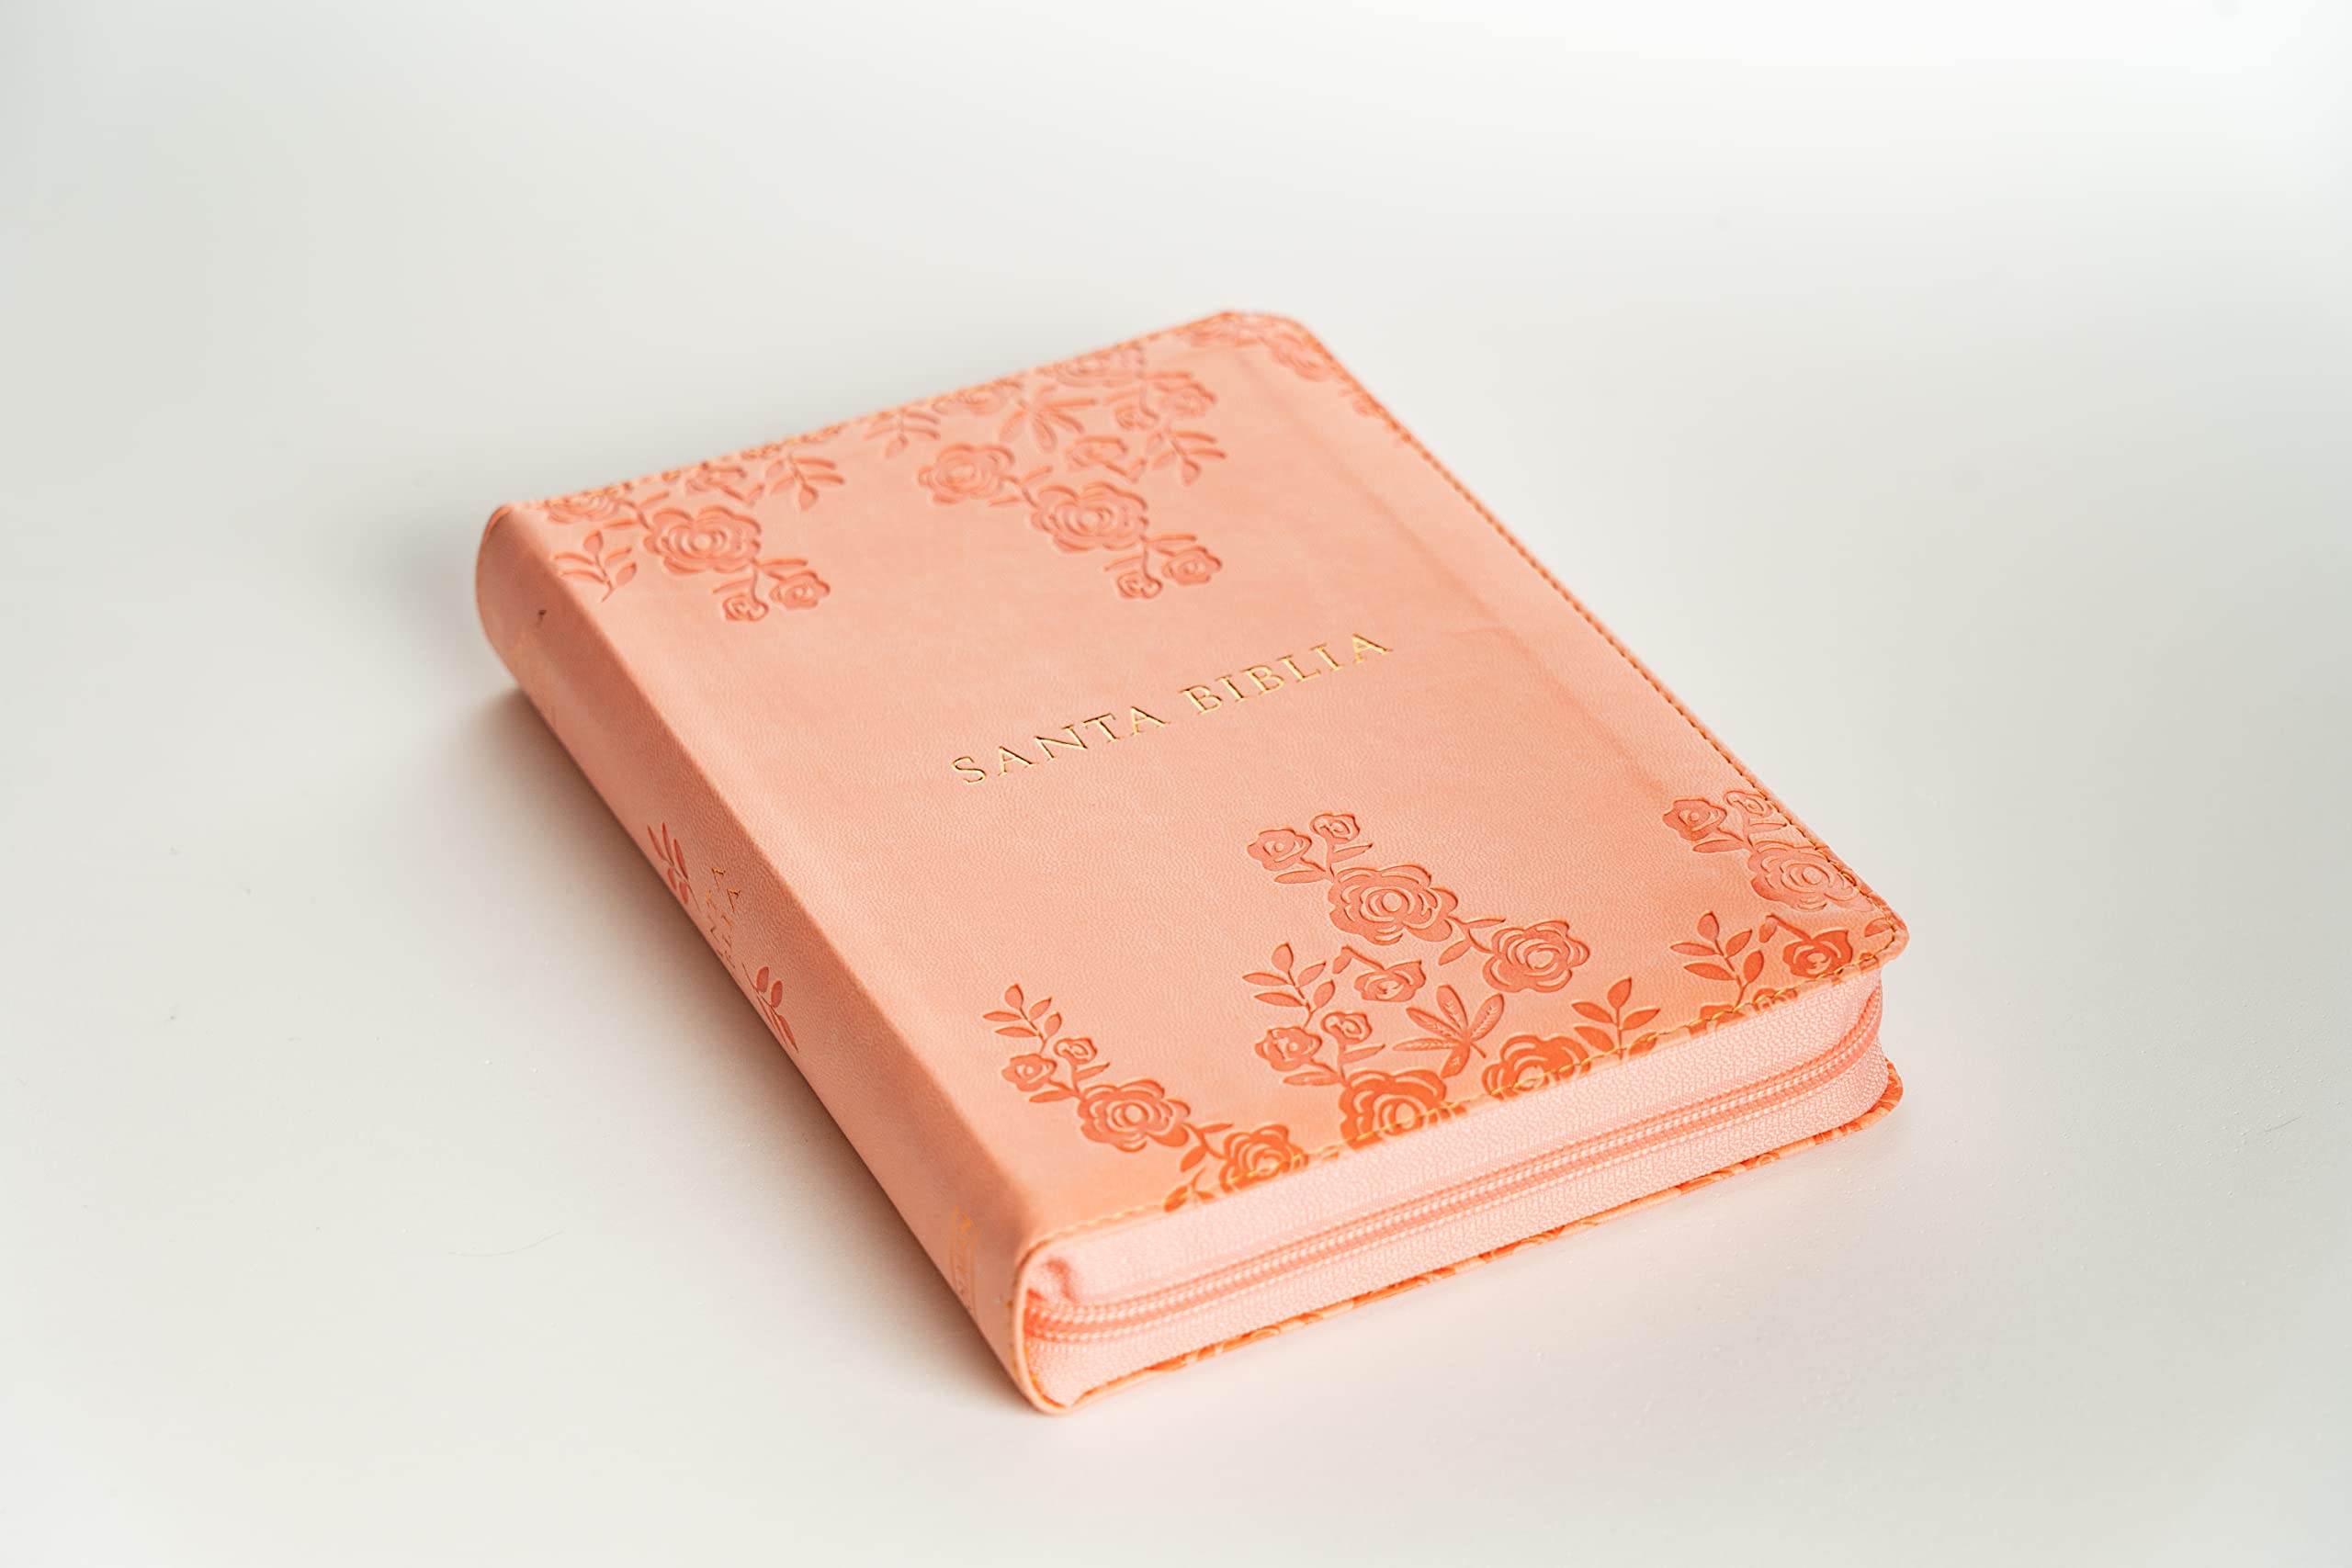 Biblia Para Mujer Reina Valera 1960 con Letra Grande tamano manual 12 puntos Cierre Indice Semil piel color Coral/ Rosado Floral